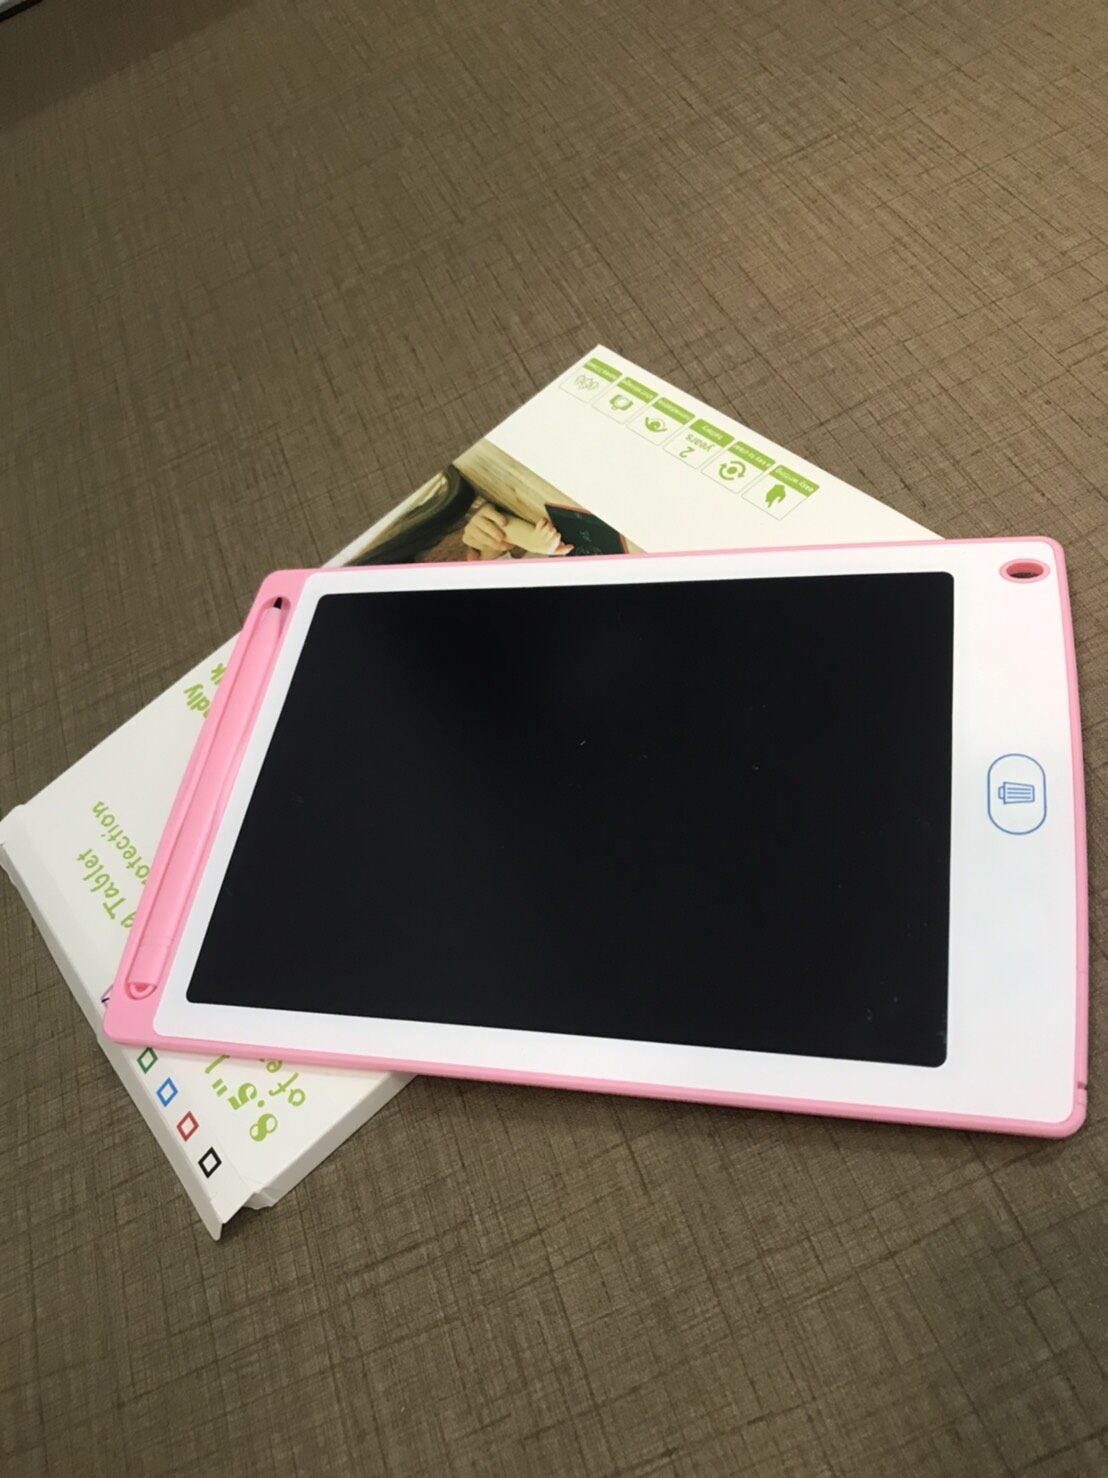 Daisy&Coco กระดานดิจิตอล แผ่นกระดาน LCD Writing Tablet ขนาด 8.5 นิ้ว กดลบง่ายแค่กดปุ่มเดียว กระดานวาดรูป เด็กได้ผู้ใหญ่ได้ ประหยัดกระดาษ พร้อมเขียนใหม่ได้ทันที